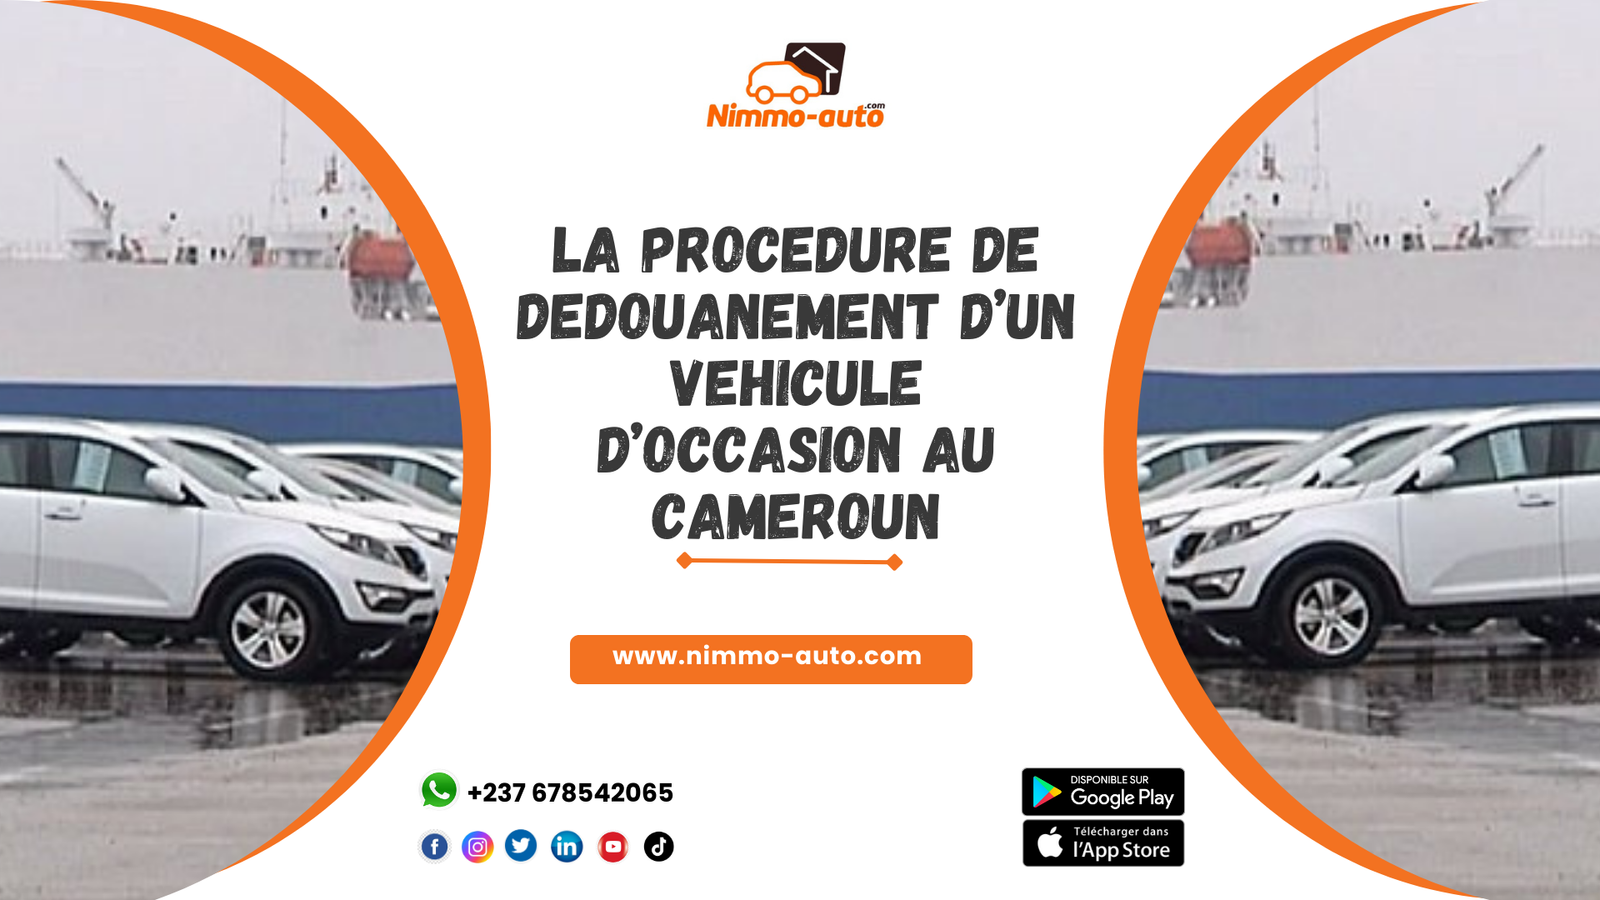 LA PROCEDURE DE DEDOUANEMENT D’UN VEHICULE D’OCCASION AU CAMEROUN